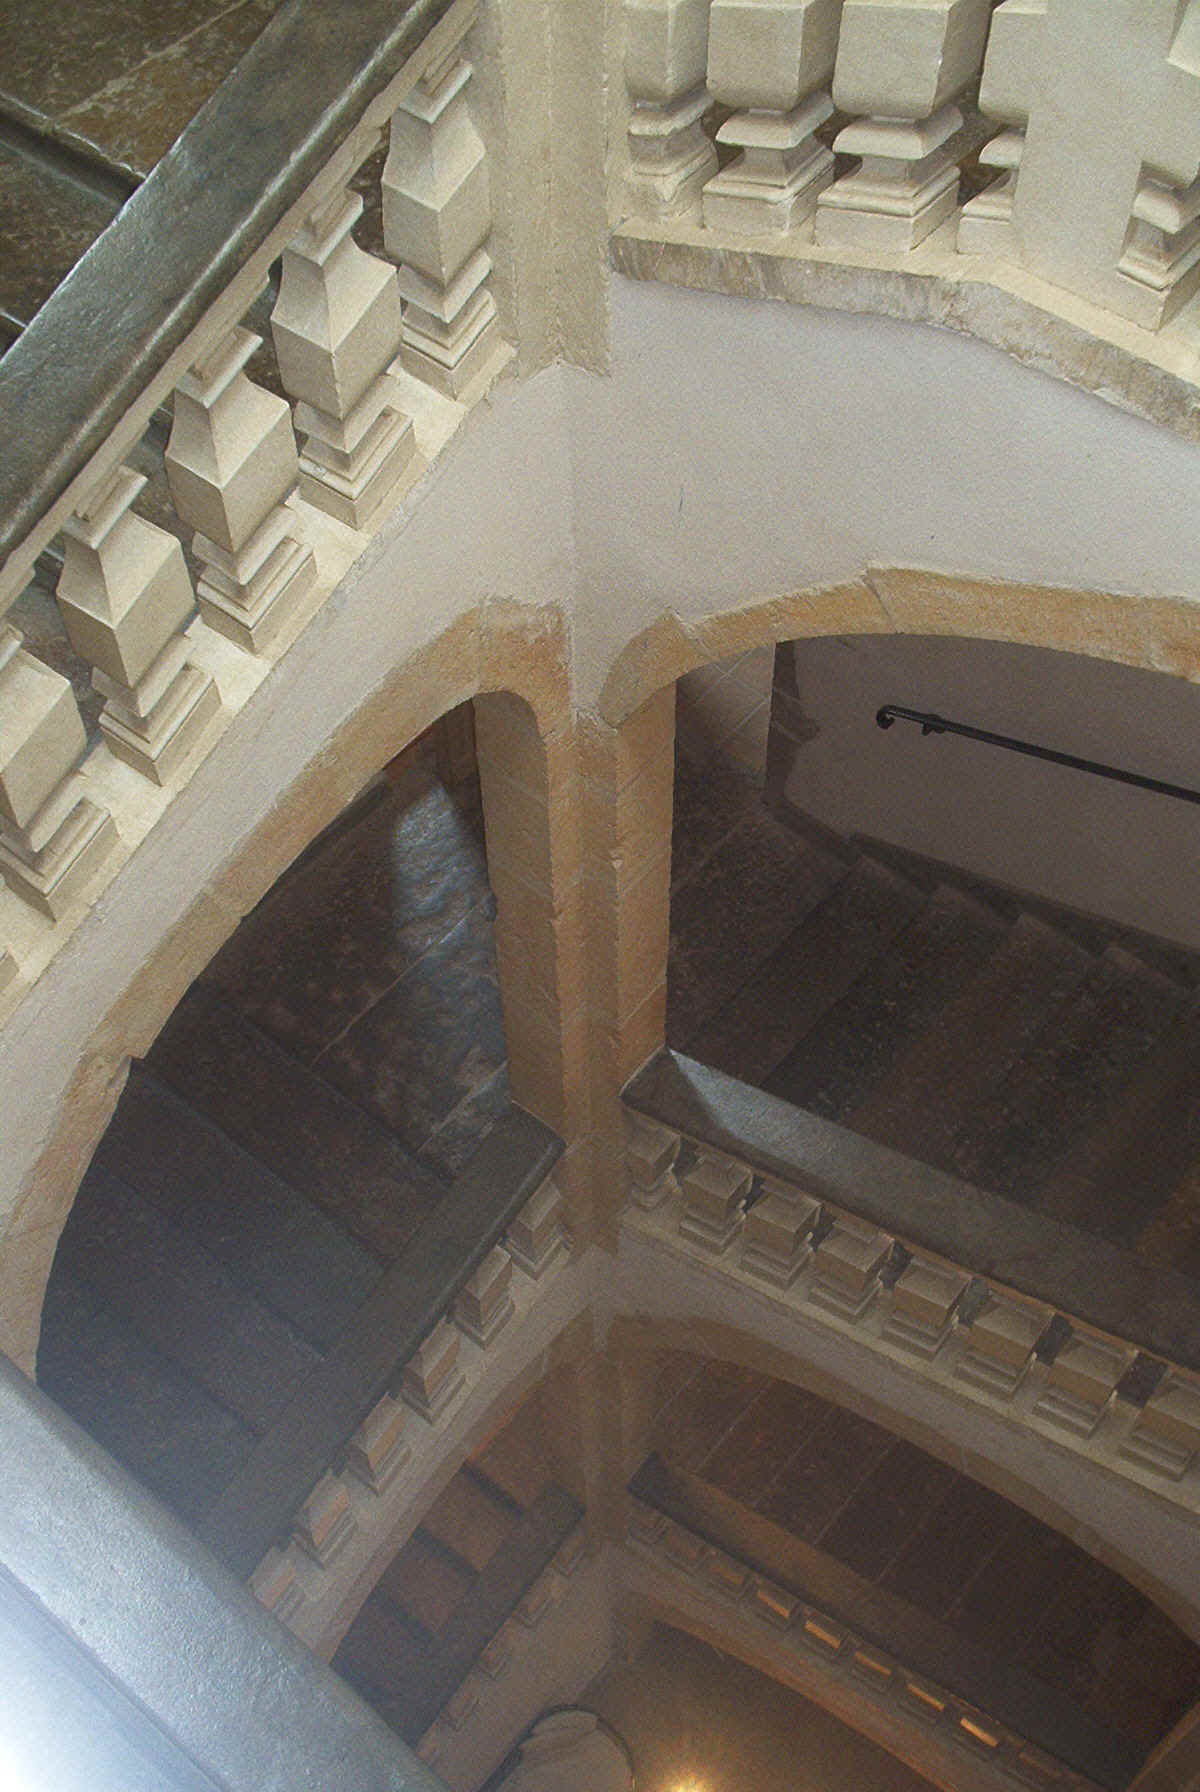 Vue du haut vers le bas de l'escalier constuit par les Guignard au chteau de Saint-Priest.jpg (1181434 bytes)